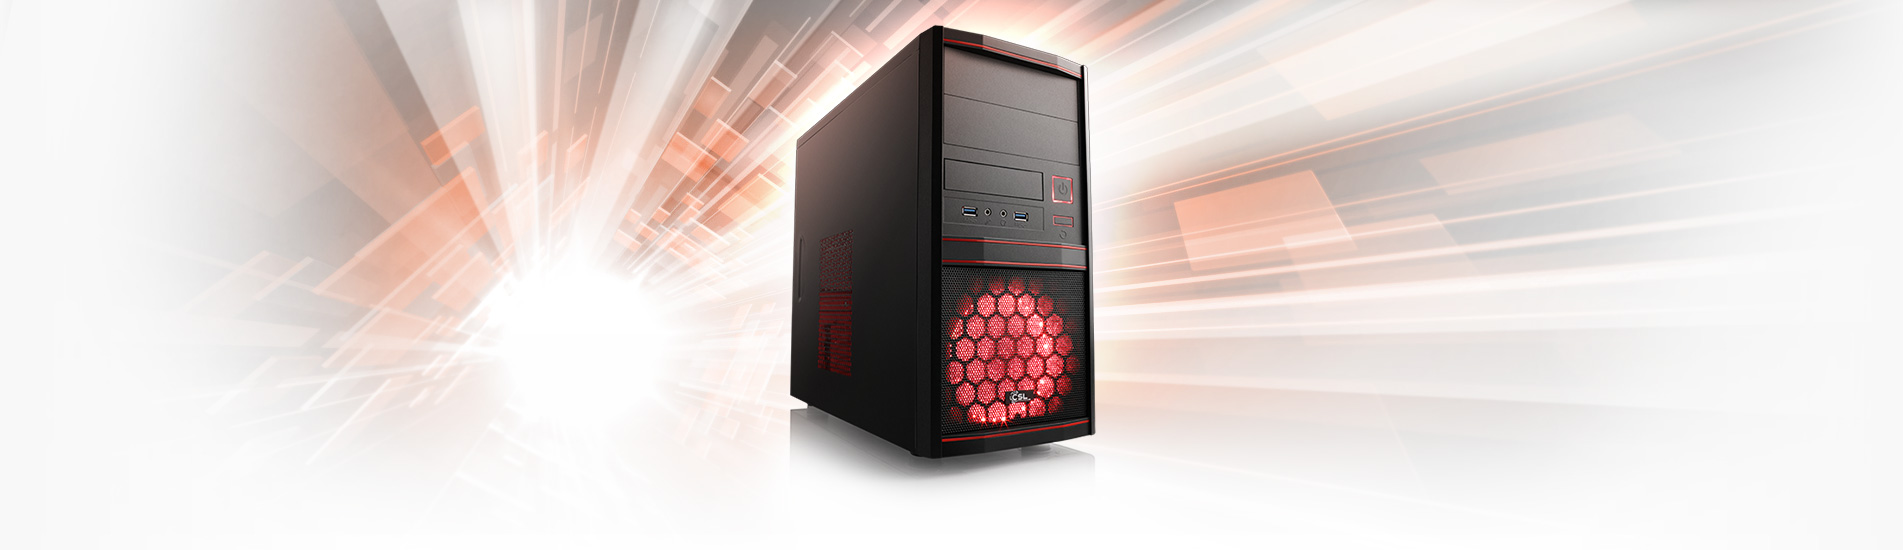 Un puissant PC AMD Ryzen™ 5 avec 16 Go de RAM pour la bureautique, le multimédia 4K et les jeux eSports en Full HD.
